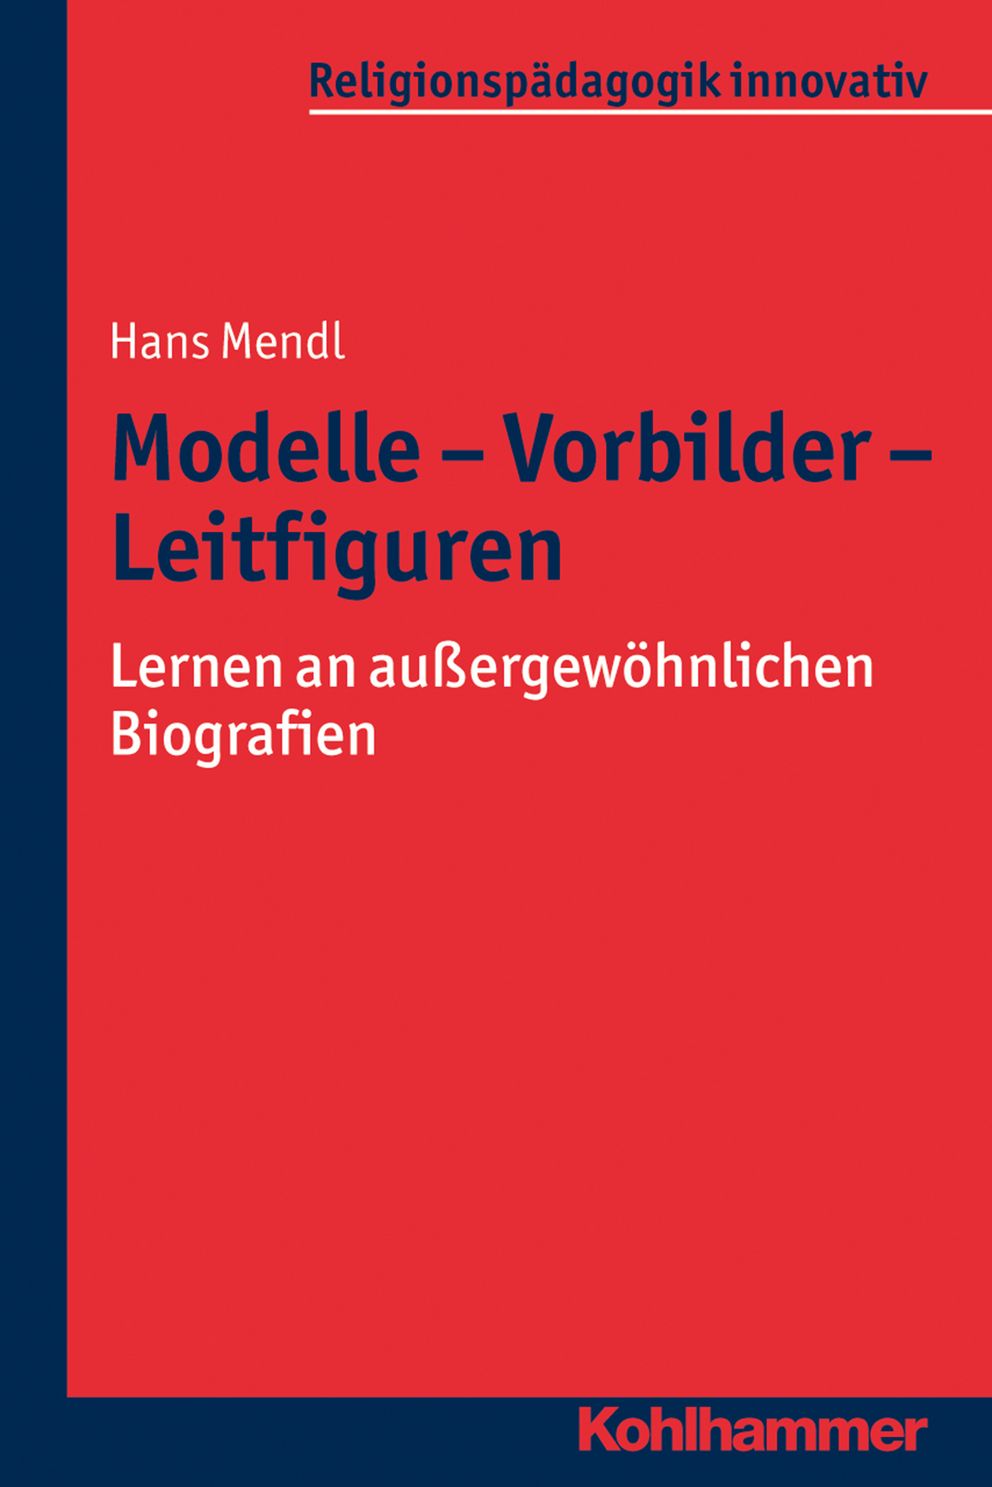 Hans Mendl, Modelle - Vorbilder - Leitfiguren. 